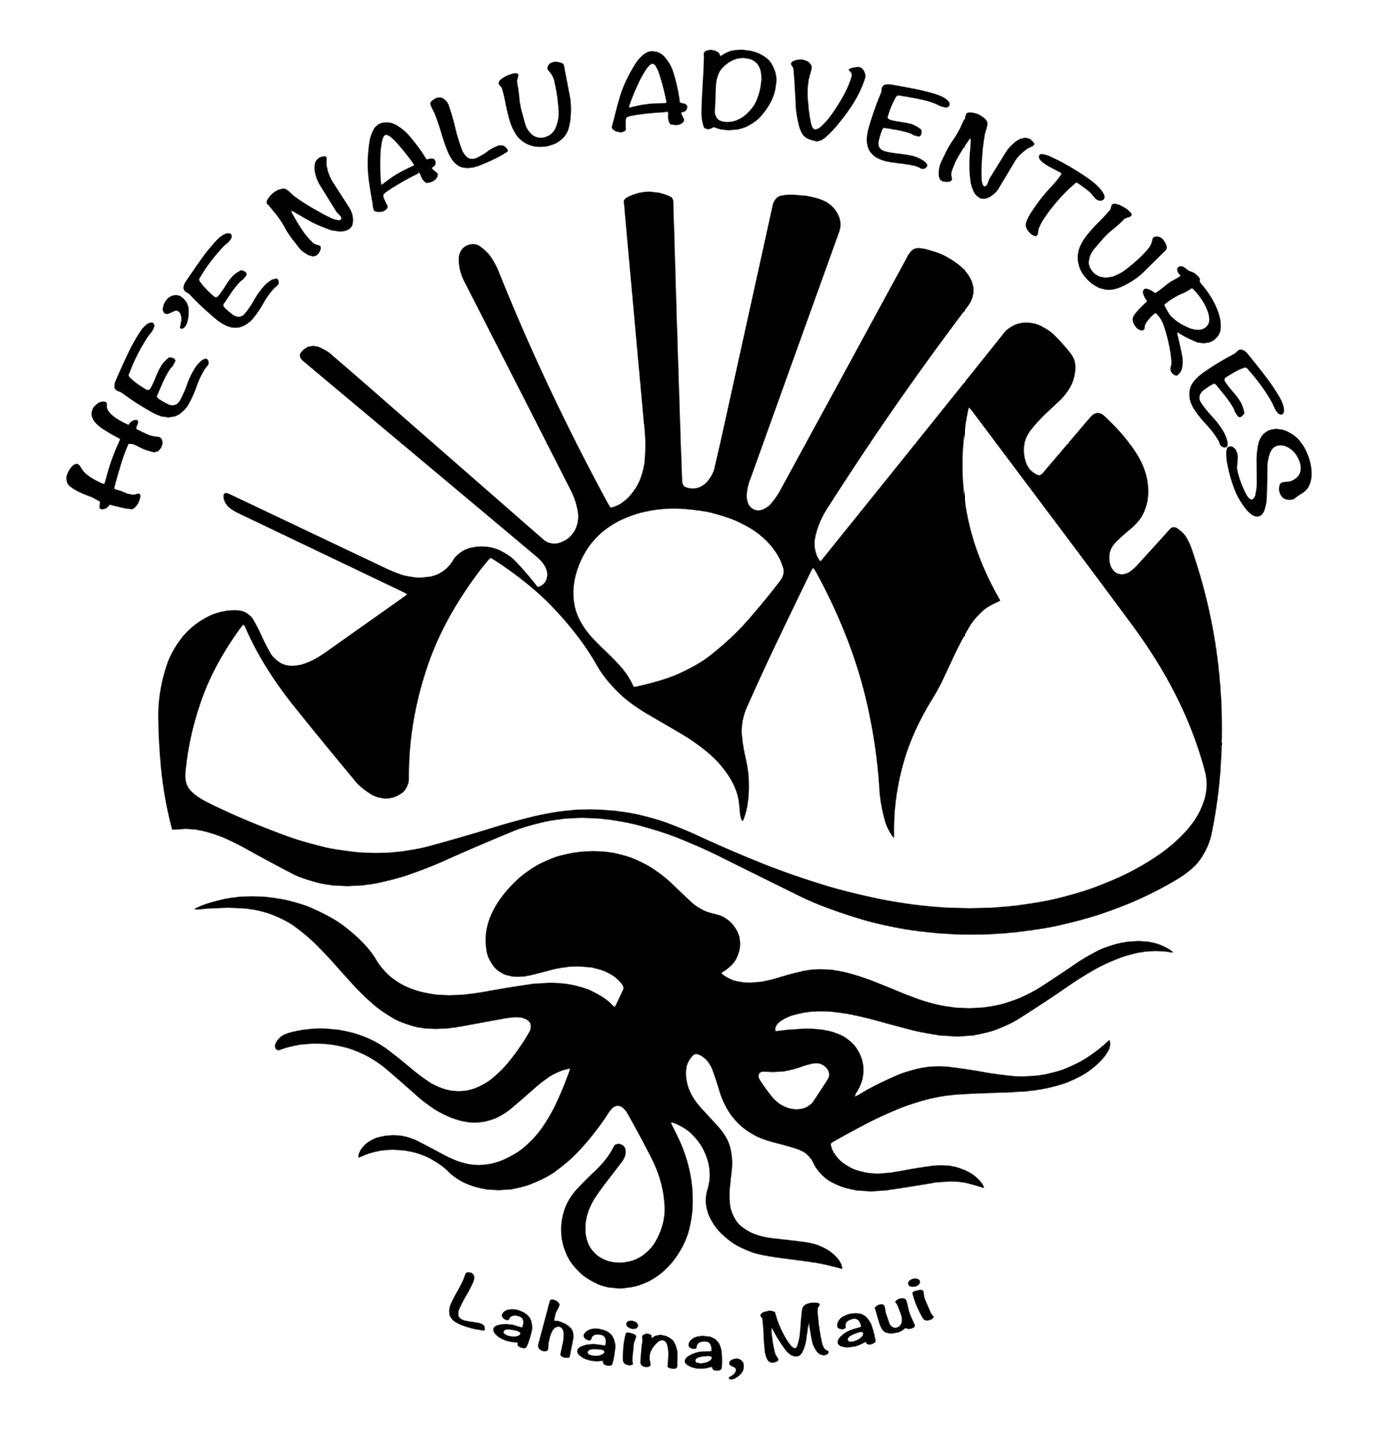 He’e Nalu Adventures